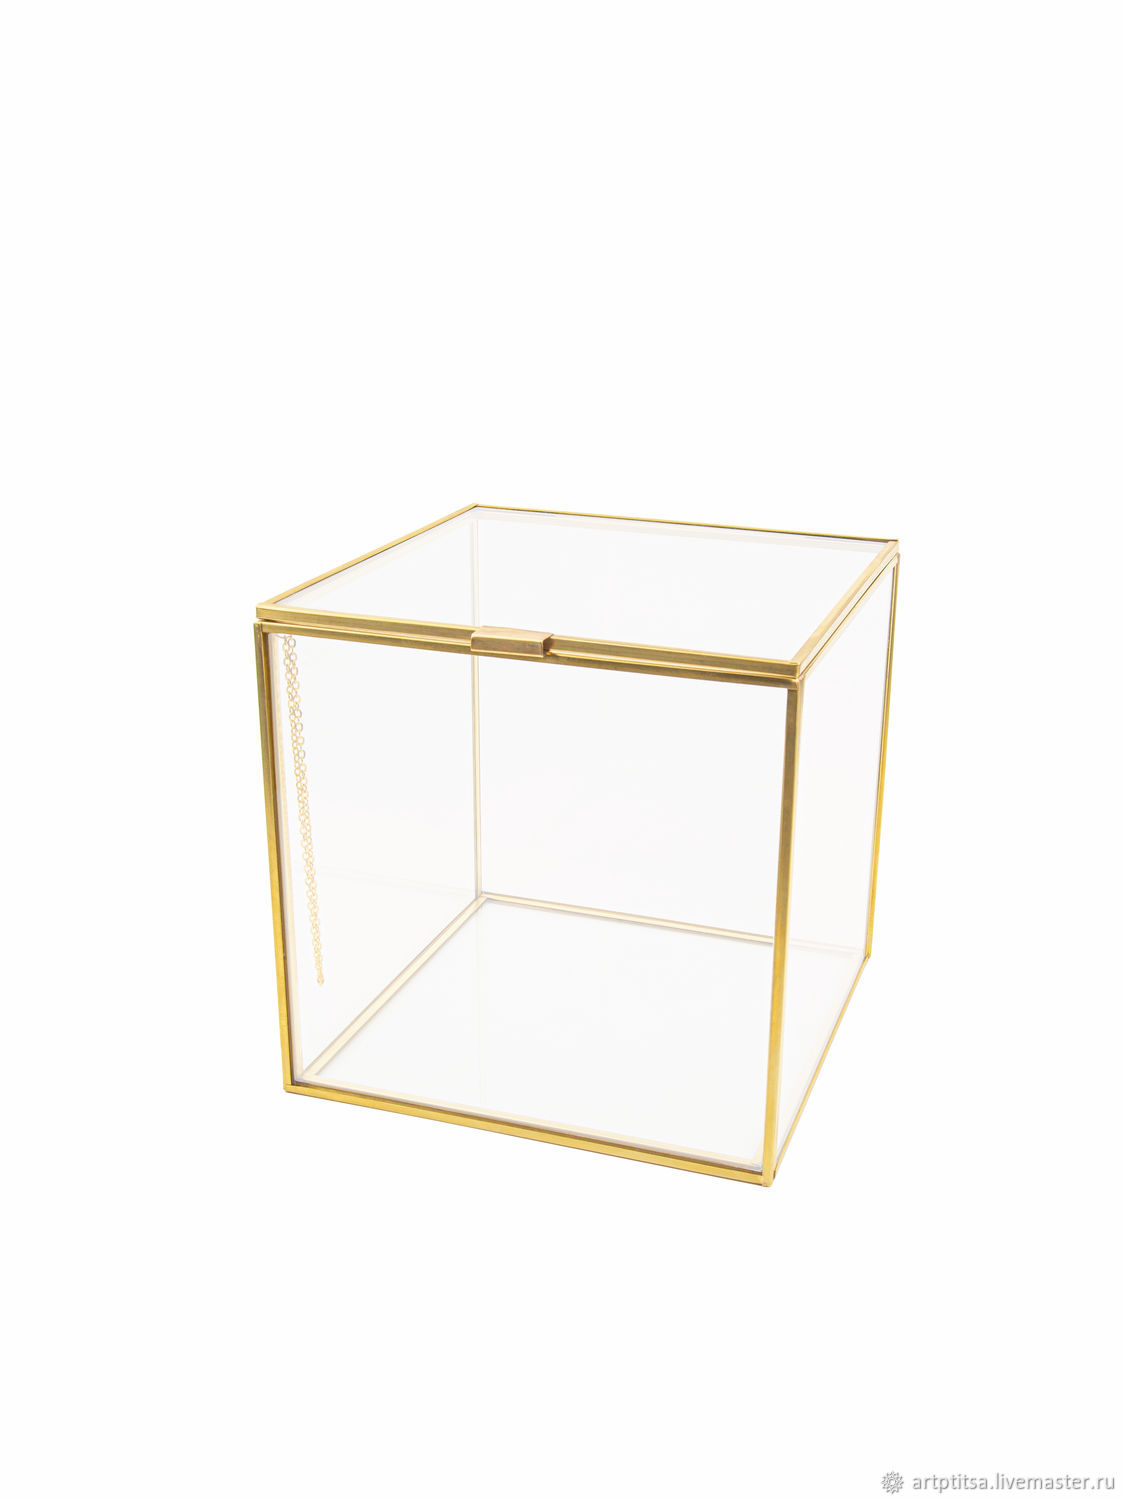 Cube шкатулка. Интерьерная шкатулка куб прозрачная. Шкатулка-куб с зеркальным дном 12х12х12см, стекло, металл. Шкатулка куб черный. KV M Kub m.